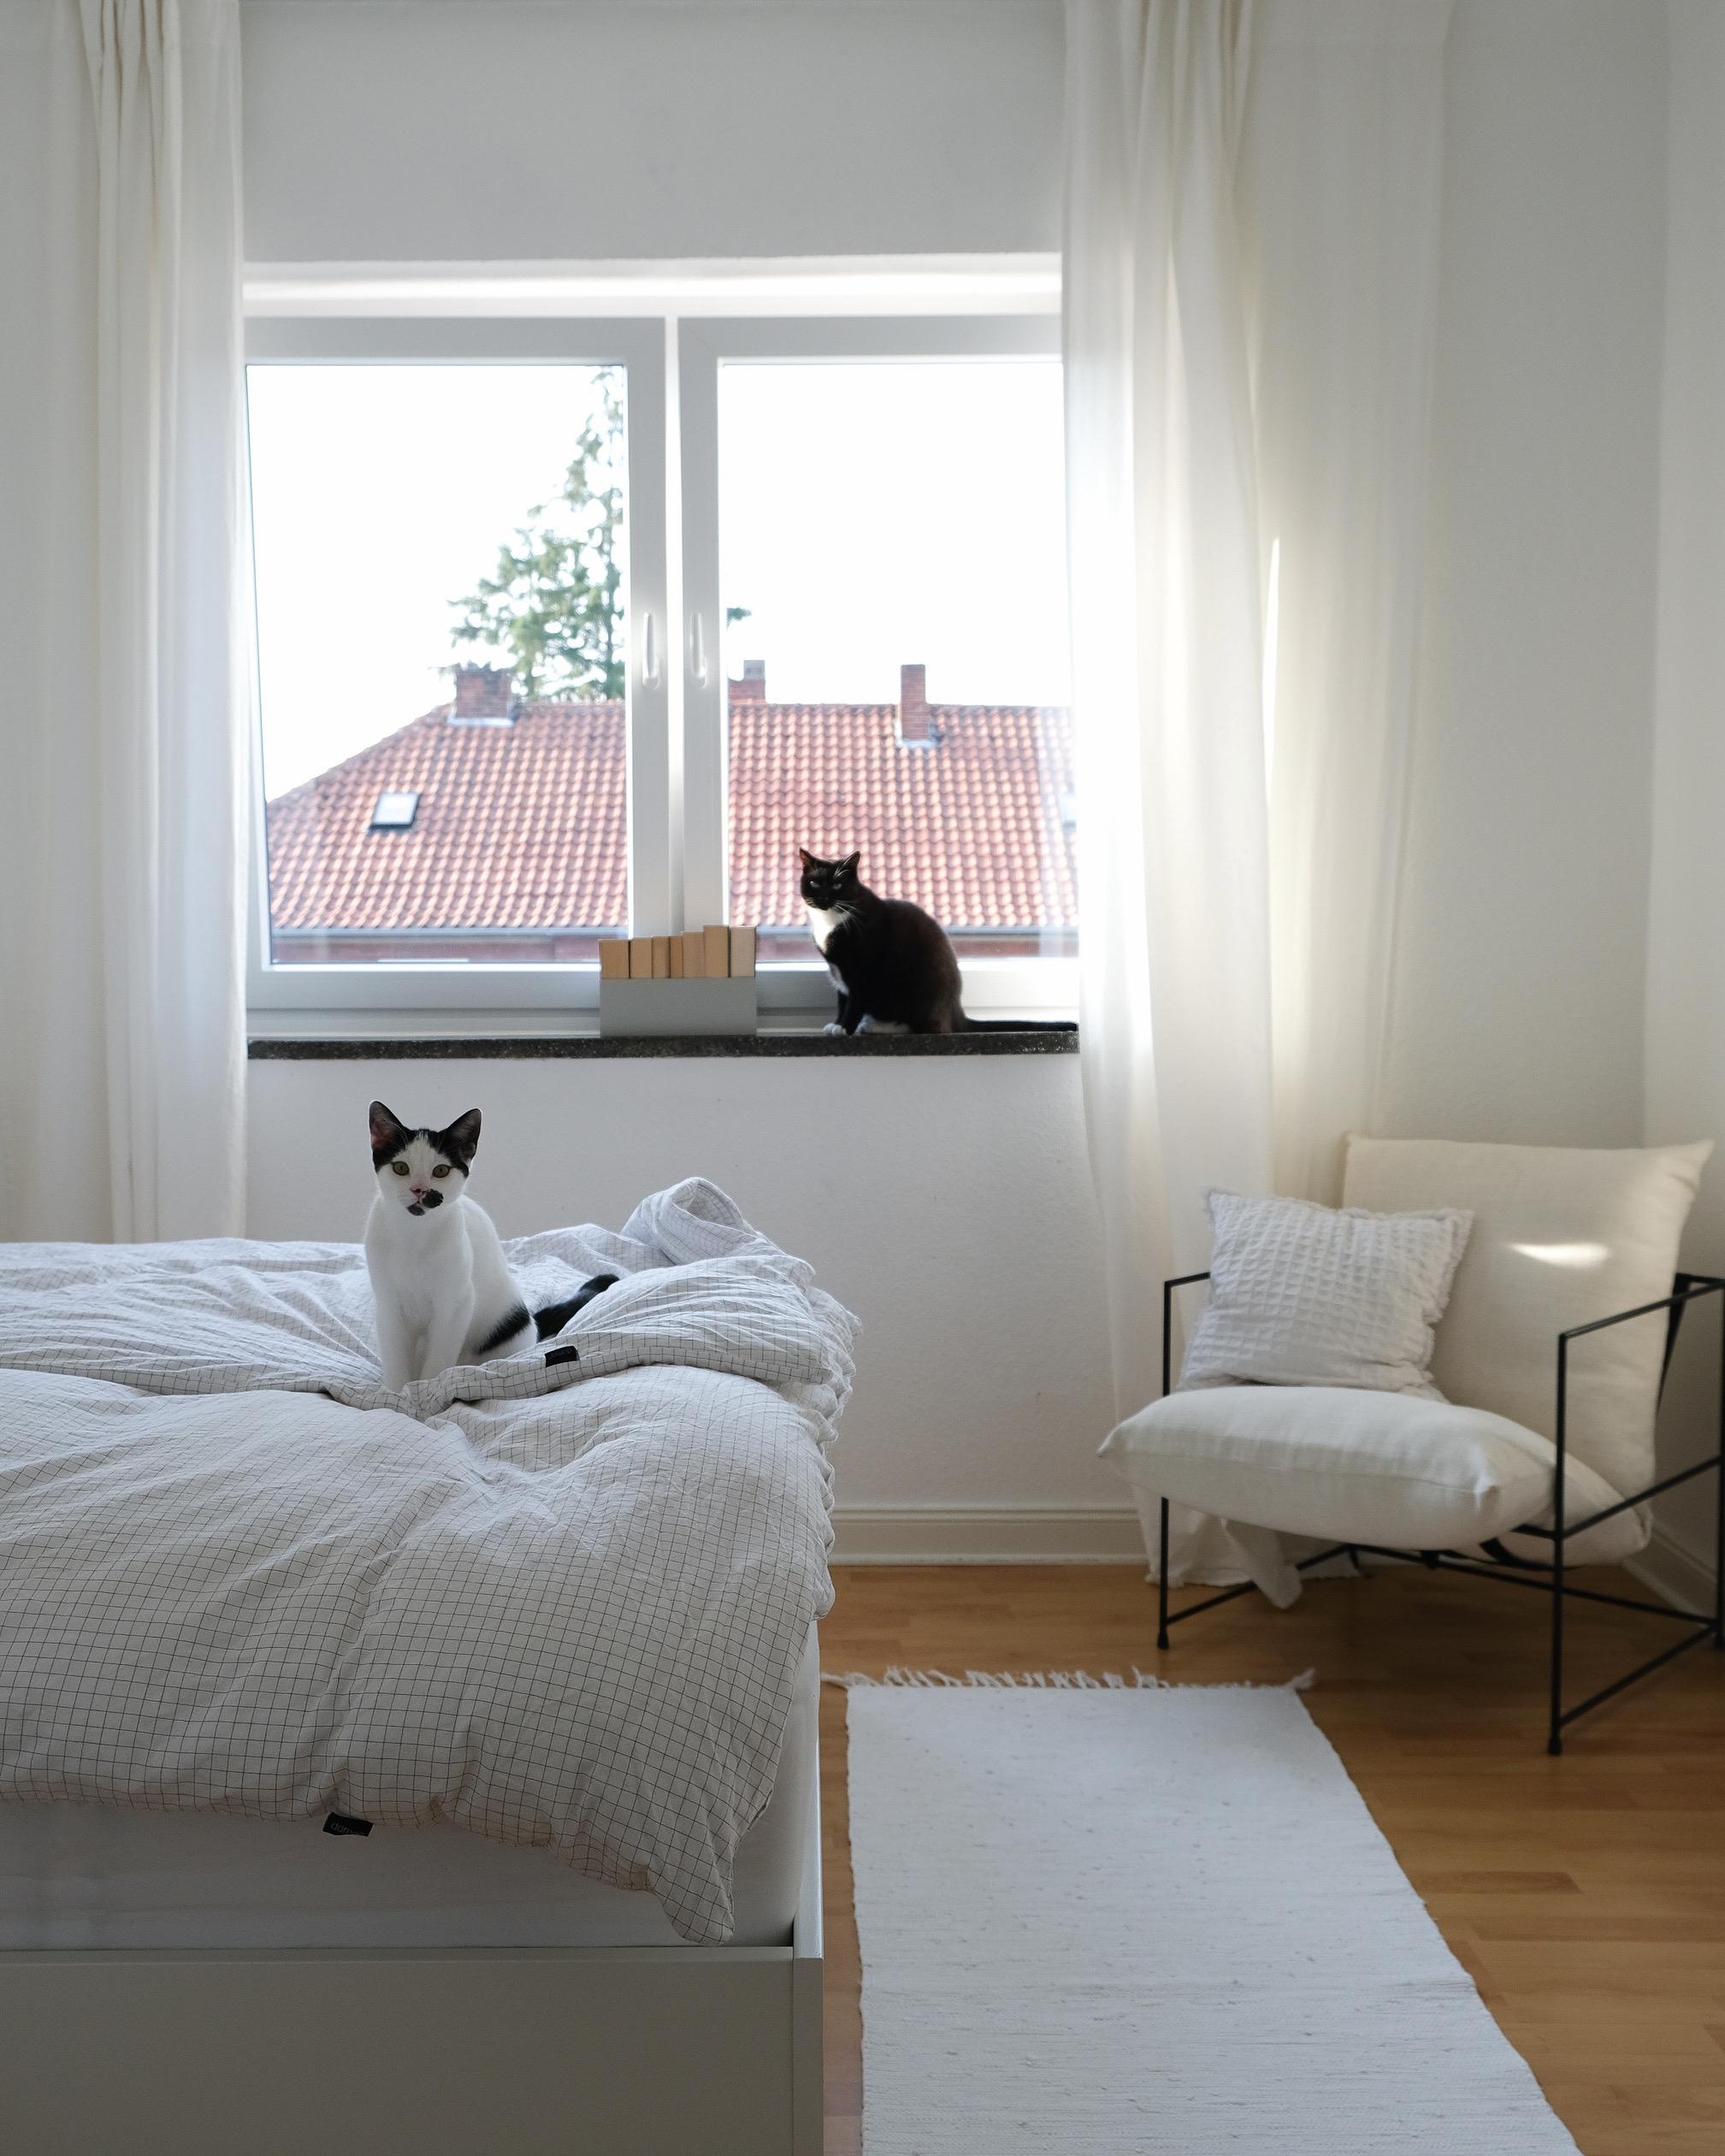 Moin Moin.
Kurt & Schnurps 

#schlafzimmer #kater #nippes #solebich #couchstyle #altbau #altbauliebe